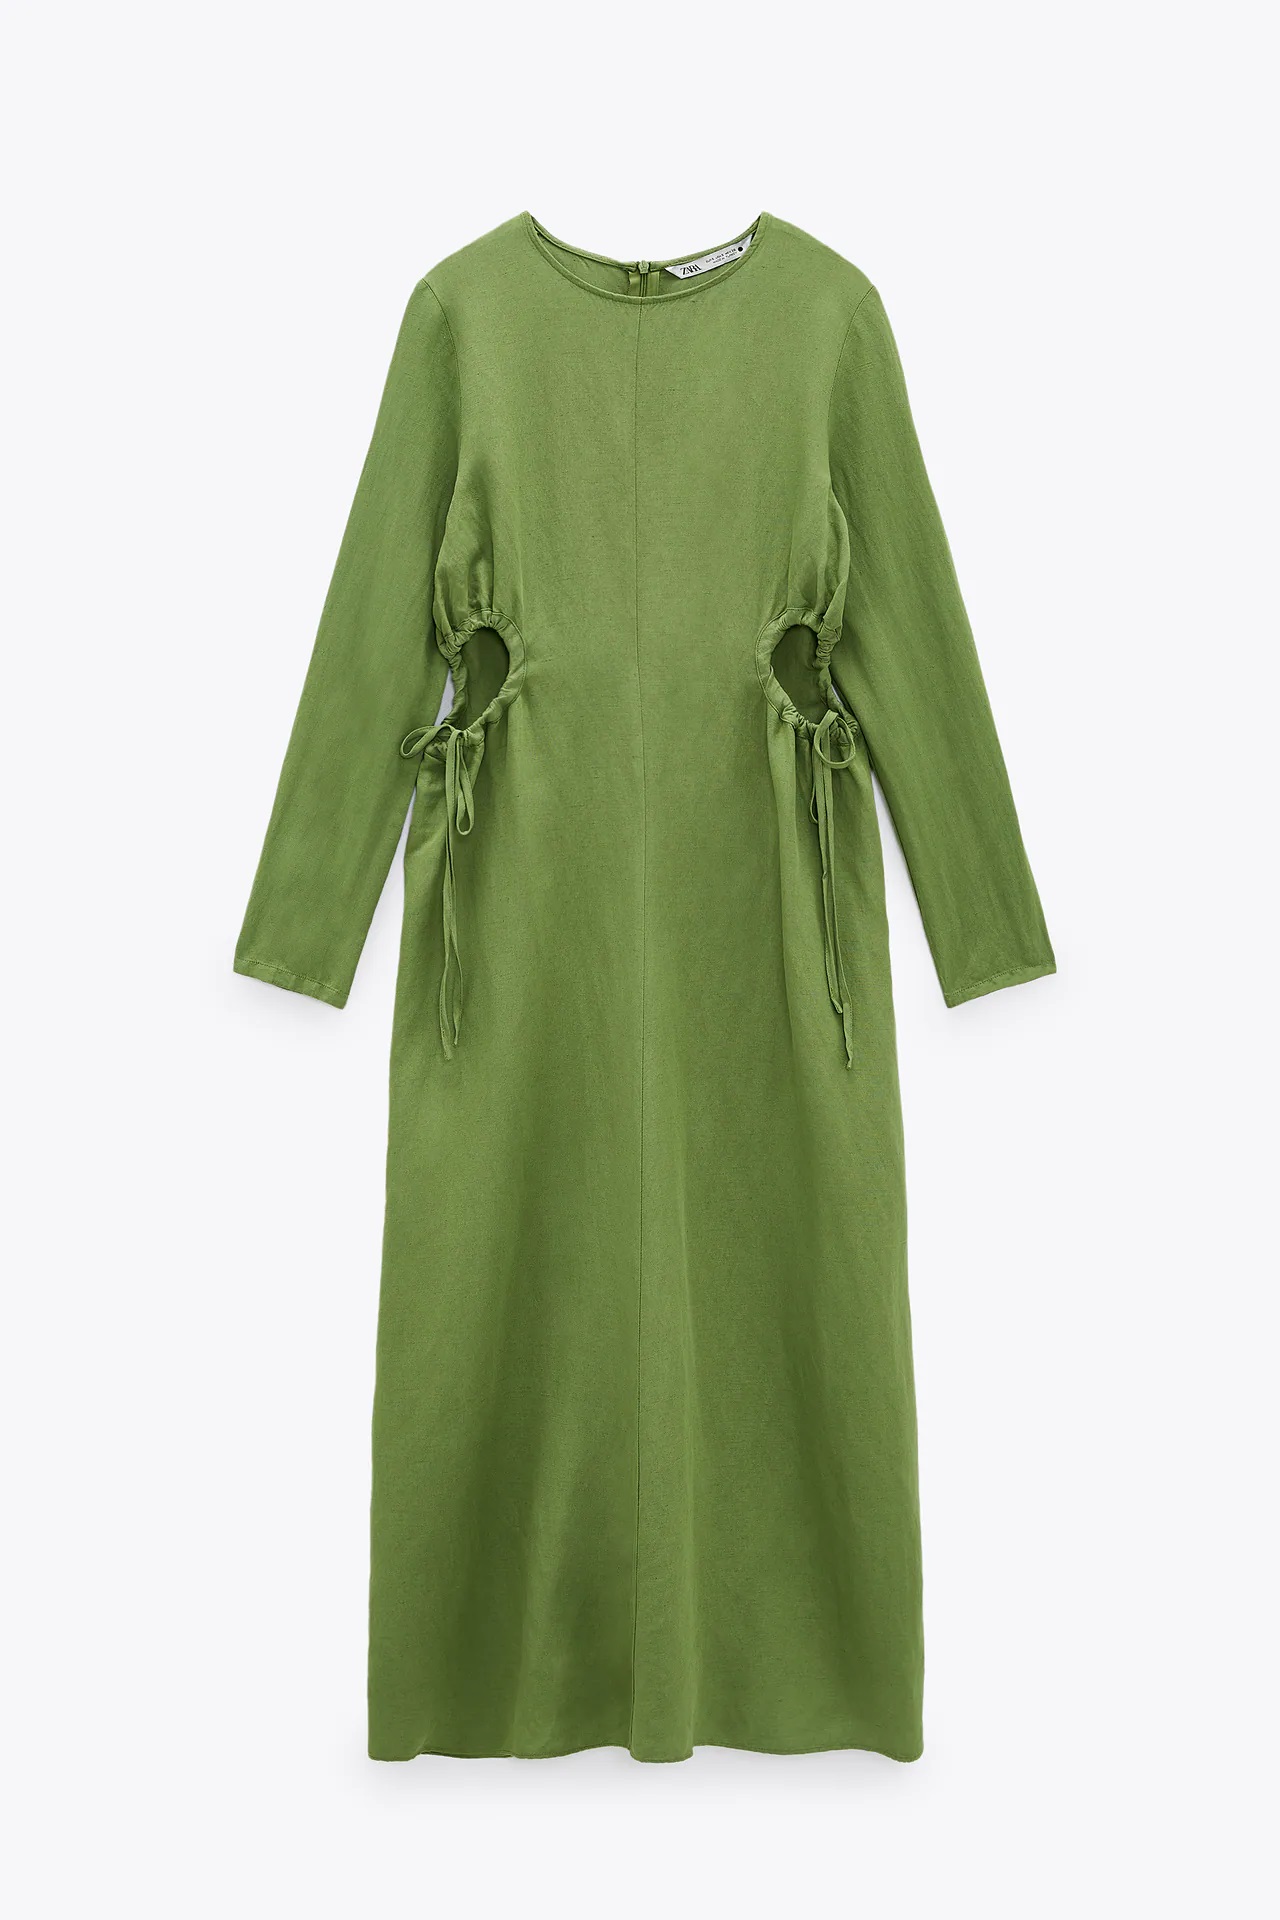 6 vestidos de Zara que demuestran que el verde es el color de la primavera verano